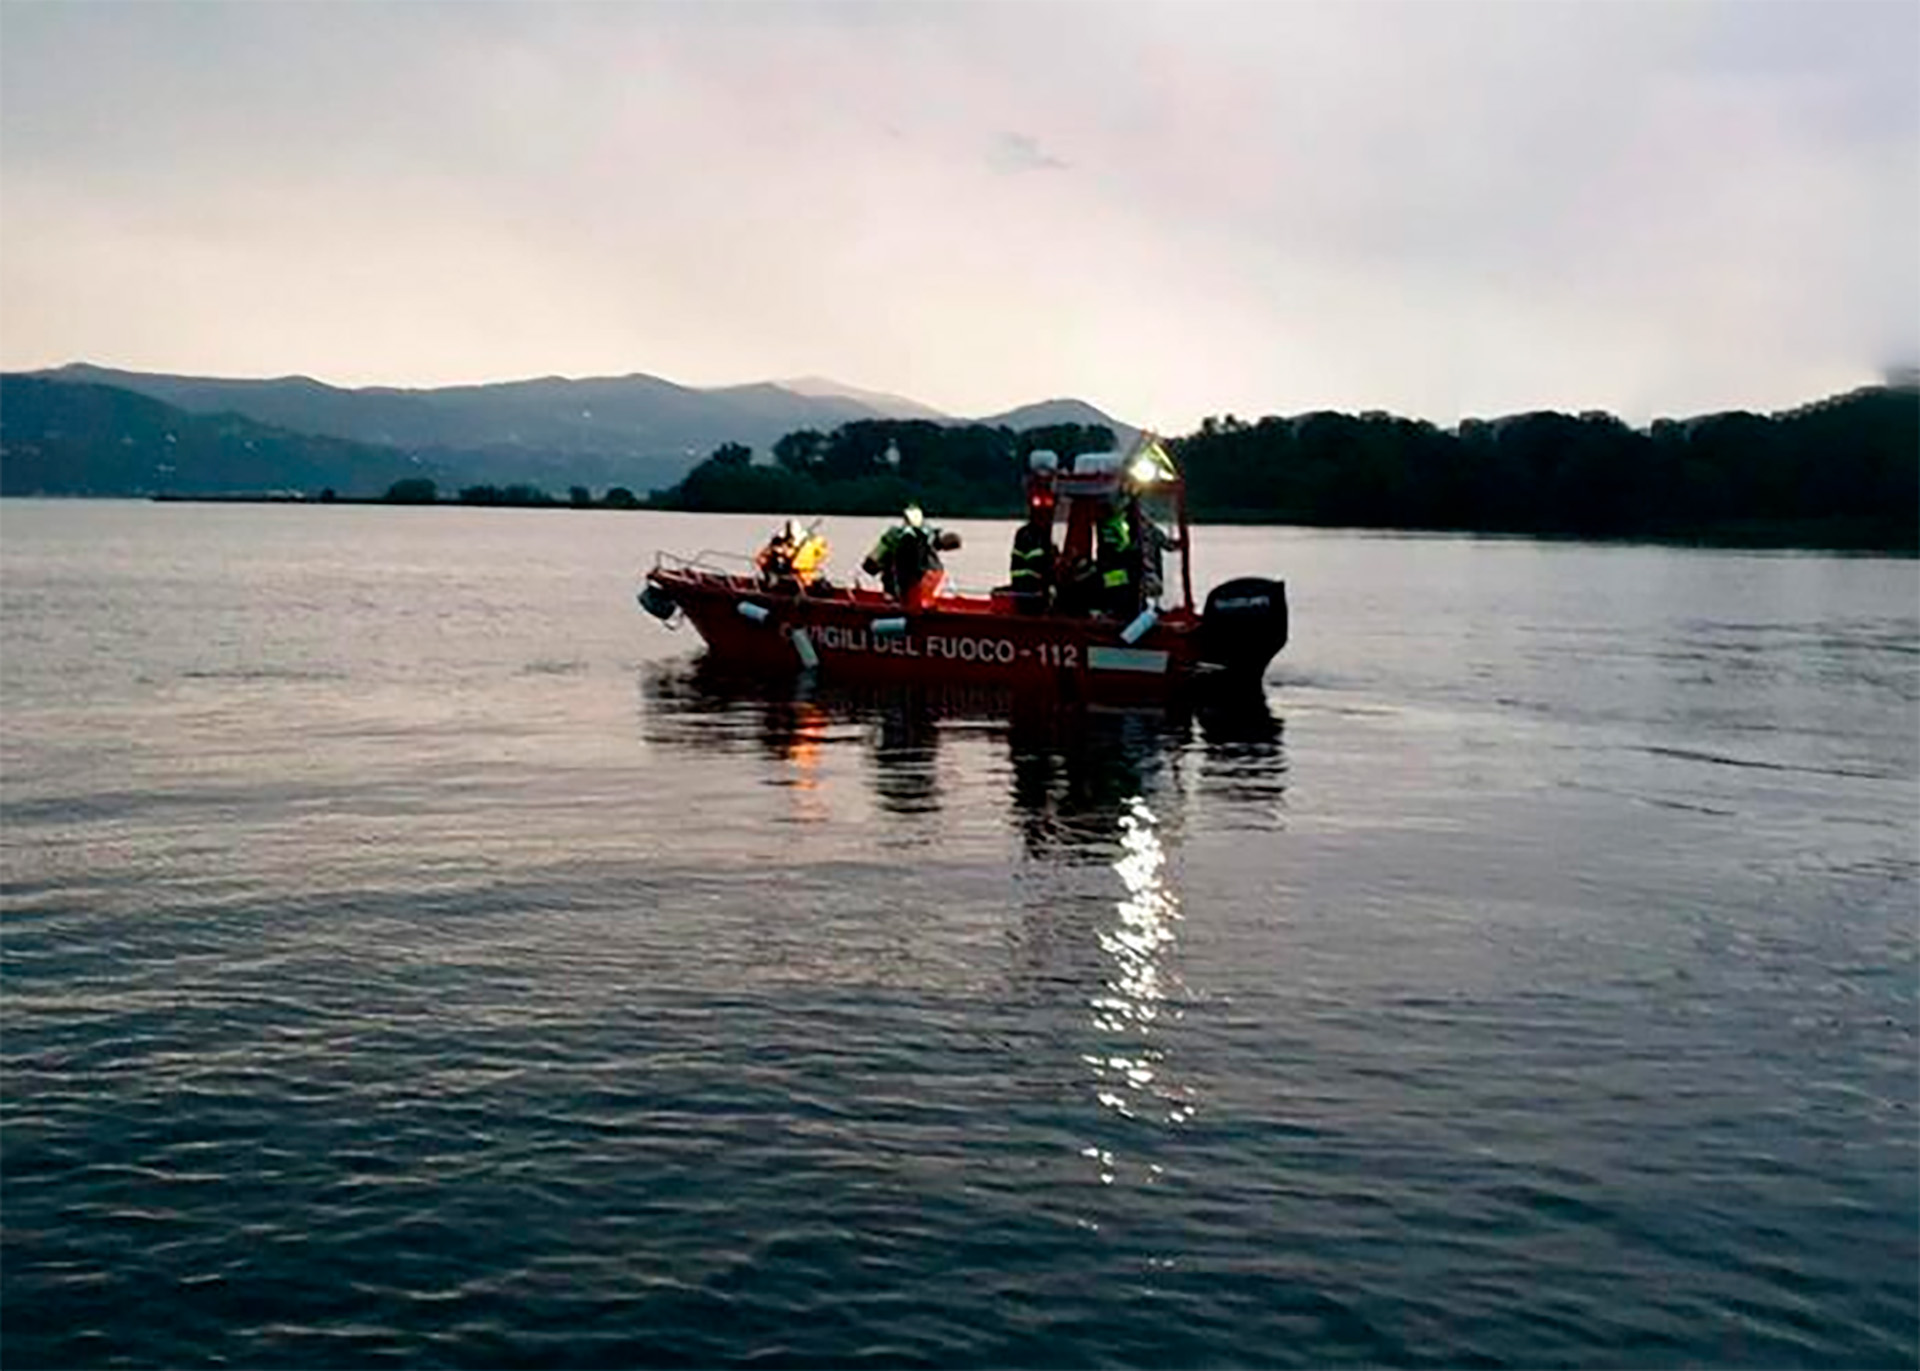 Los equipos de rescate utilizan helicópteros, barcos y buzos para buscar a los desaparecidos